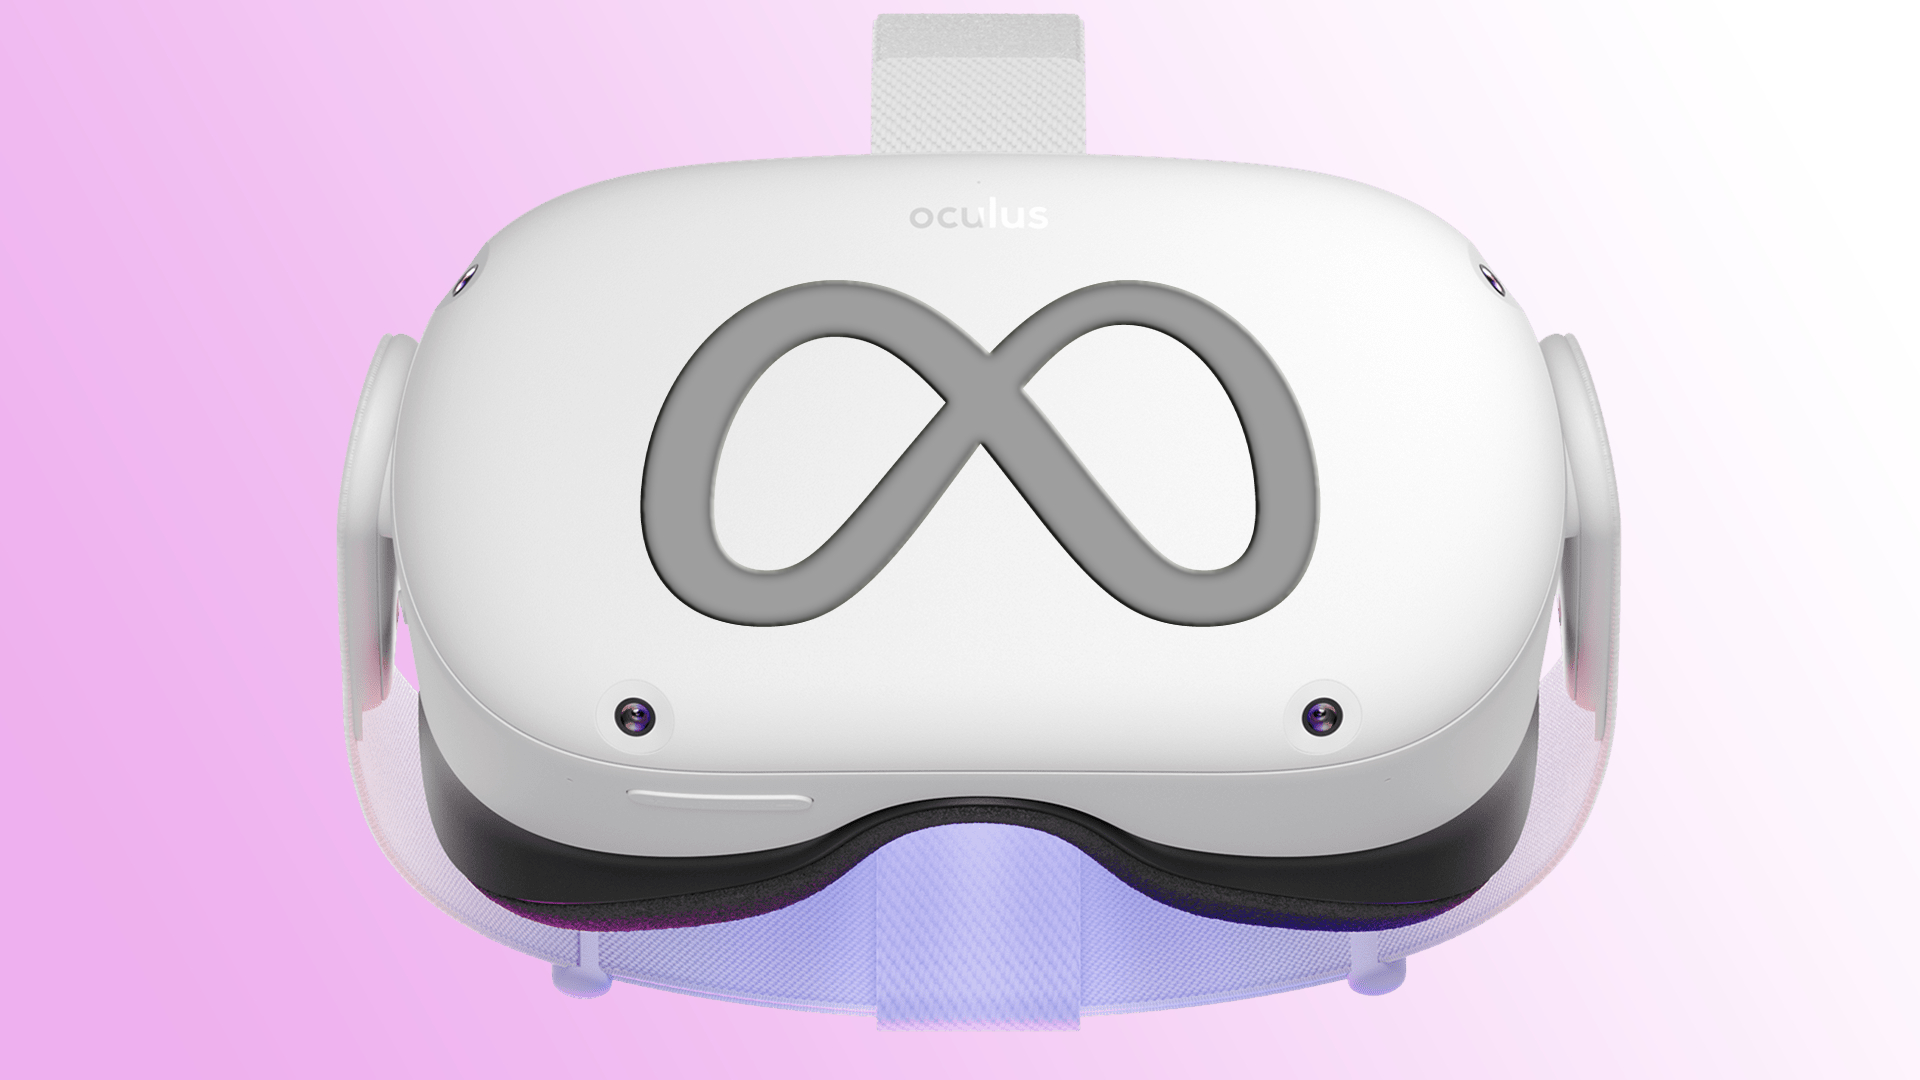 meta-may-make-a-mini-led-oculus-quest-2-pro-vr-headset